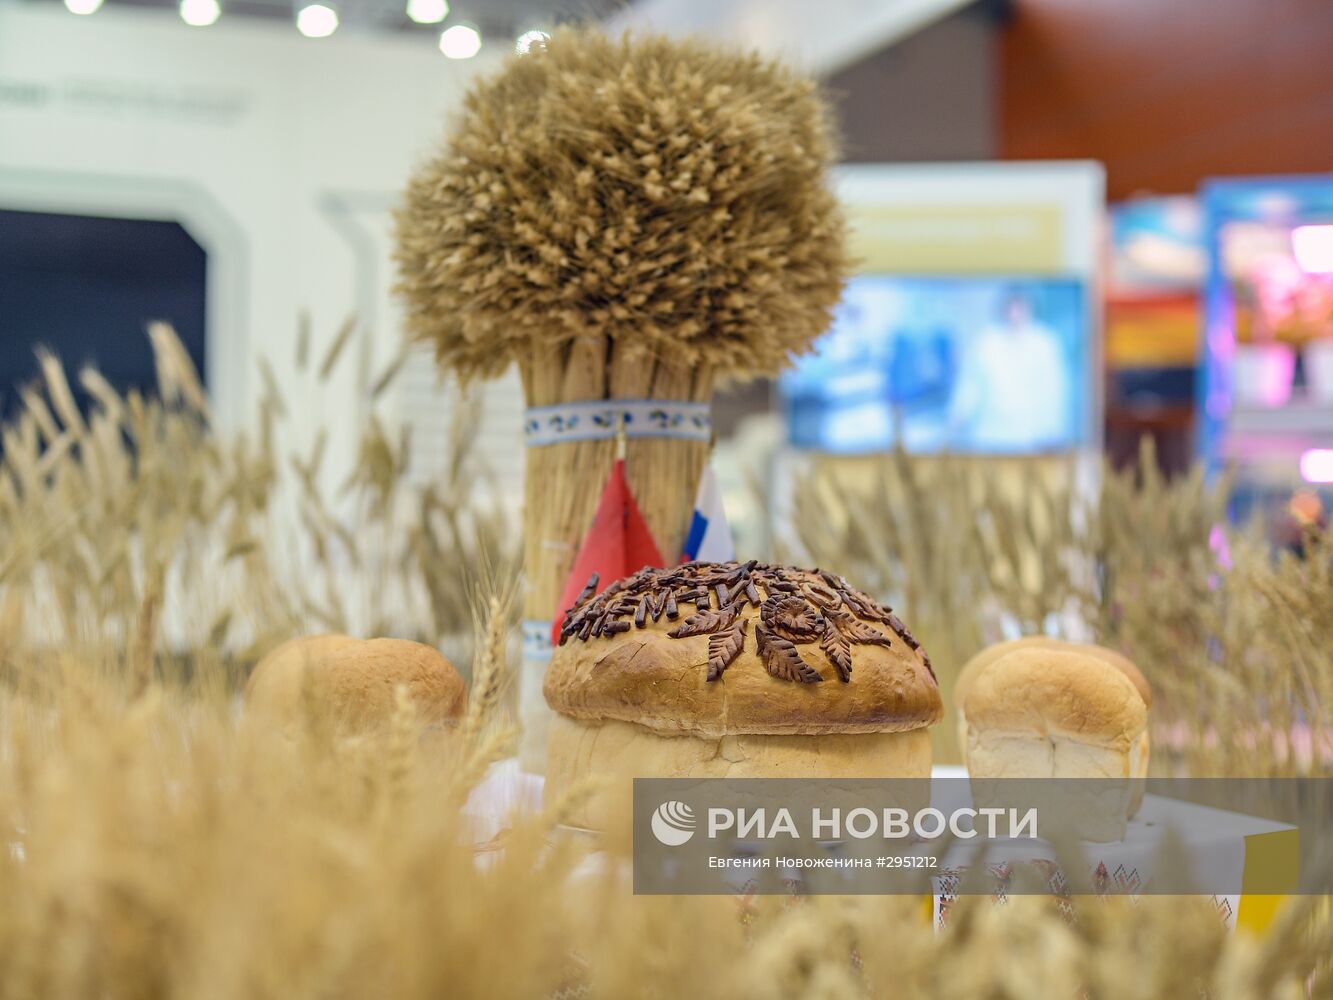 18-я Российская агропромышленная выставка "Золотая осень"